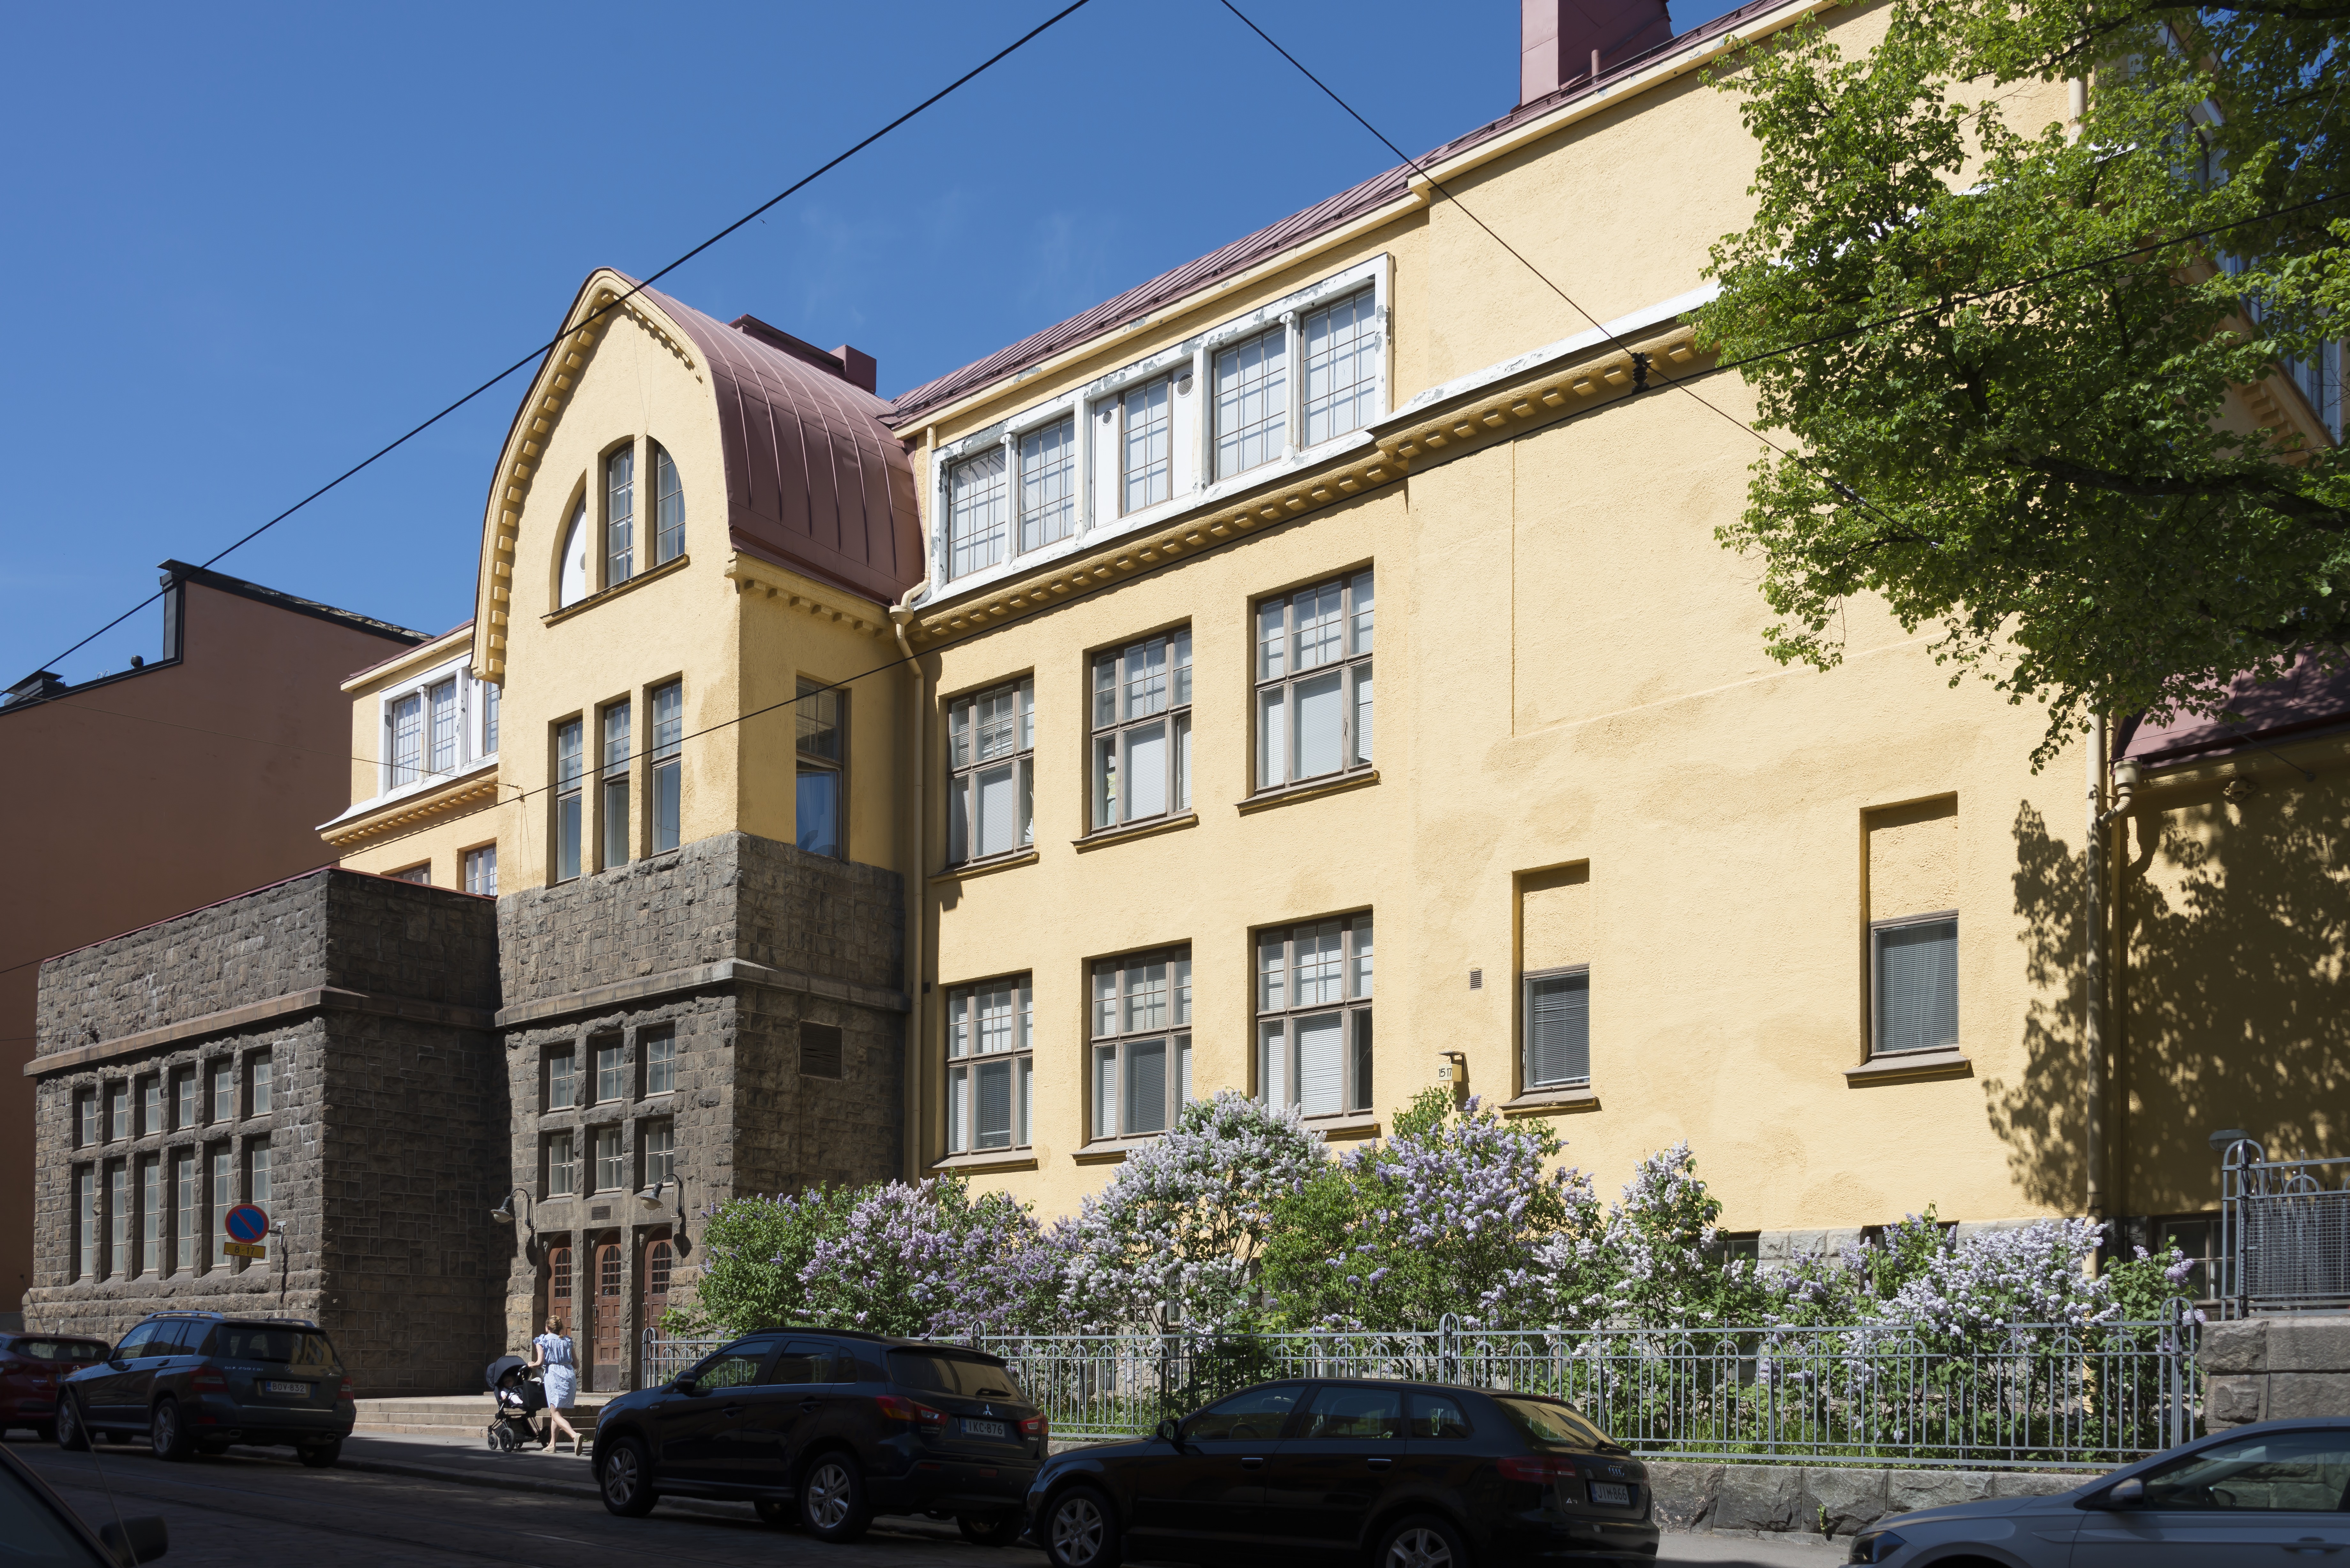 Tehtaankadun ala-asteen koulu. Tehtaankatu 15-17. Albert Nybergin suunnittelema koulurakennus vuodelta 1908.